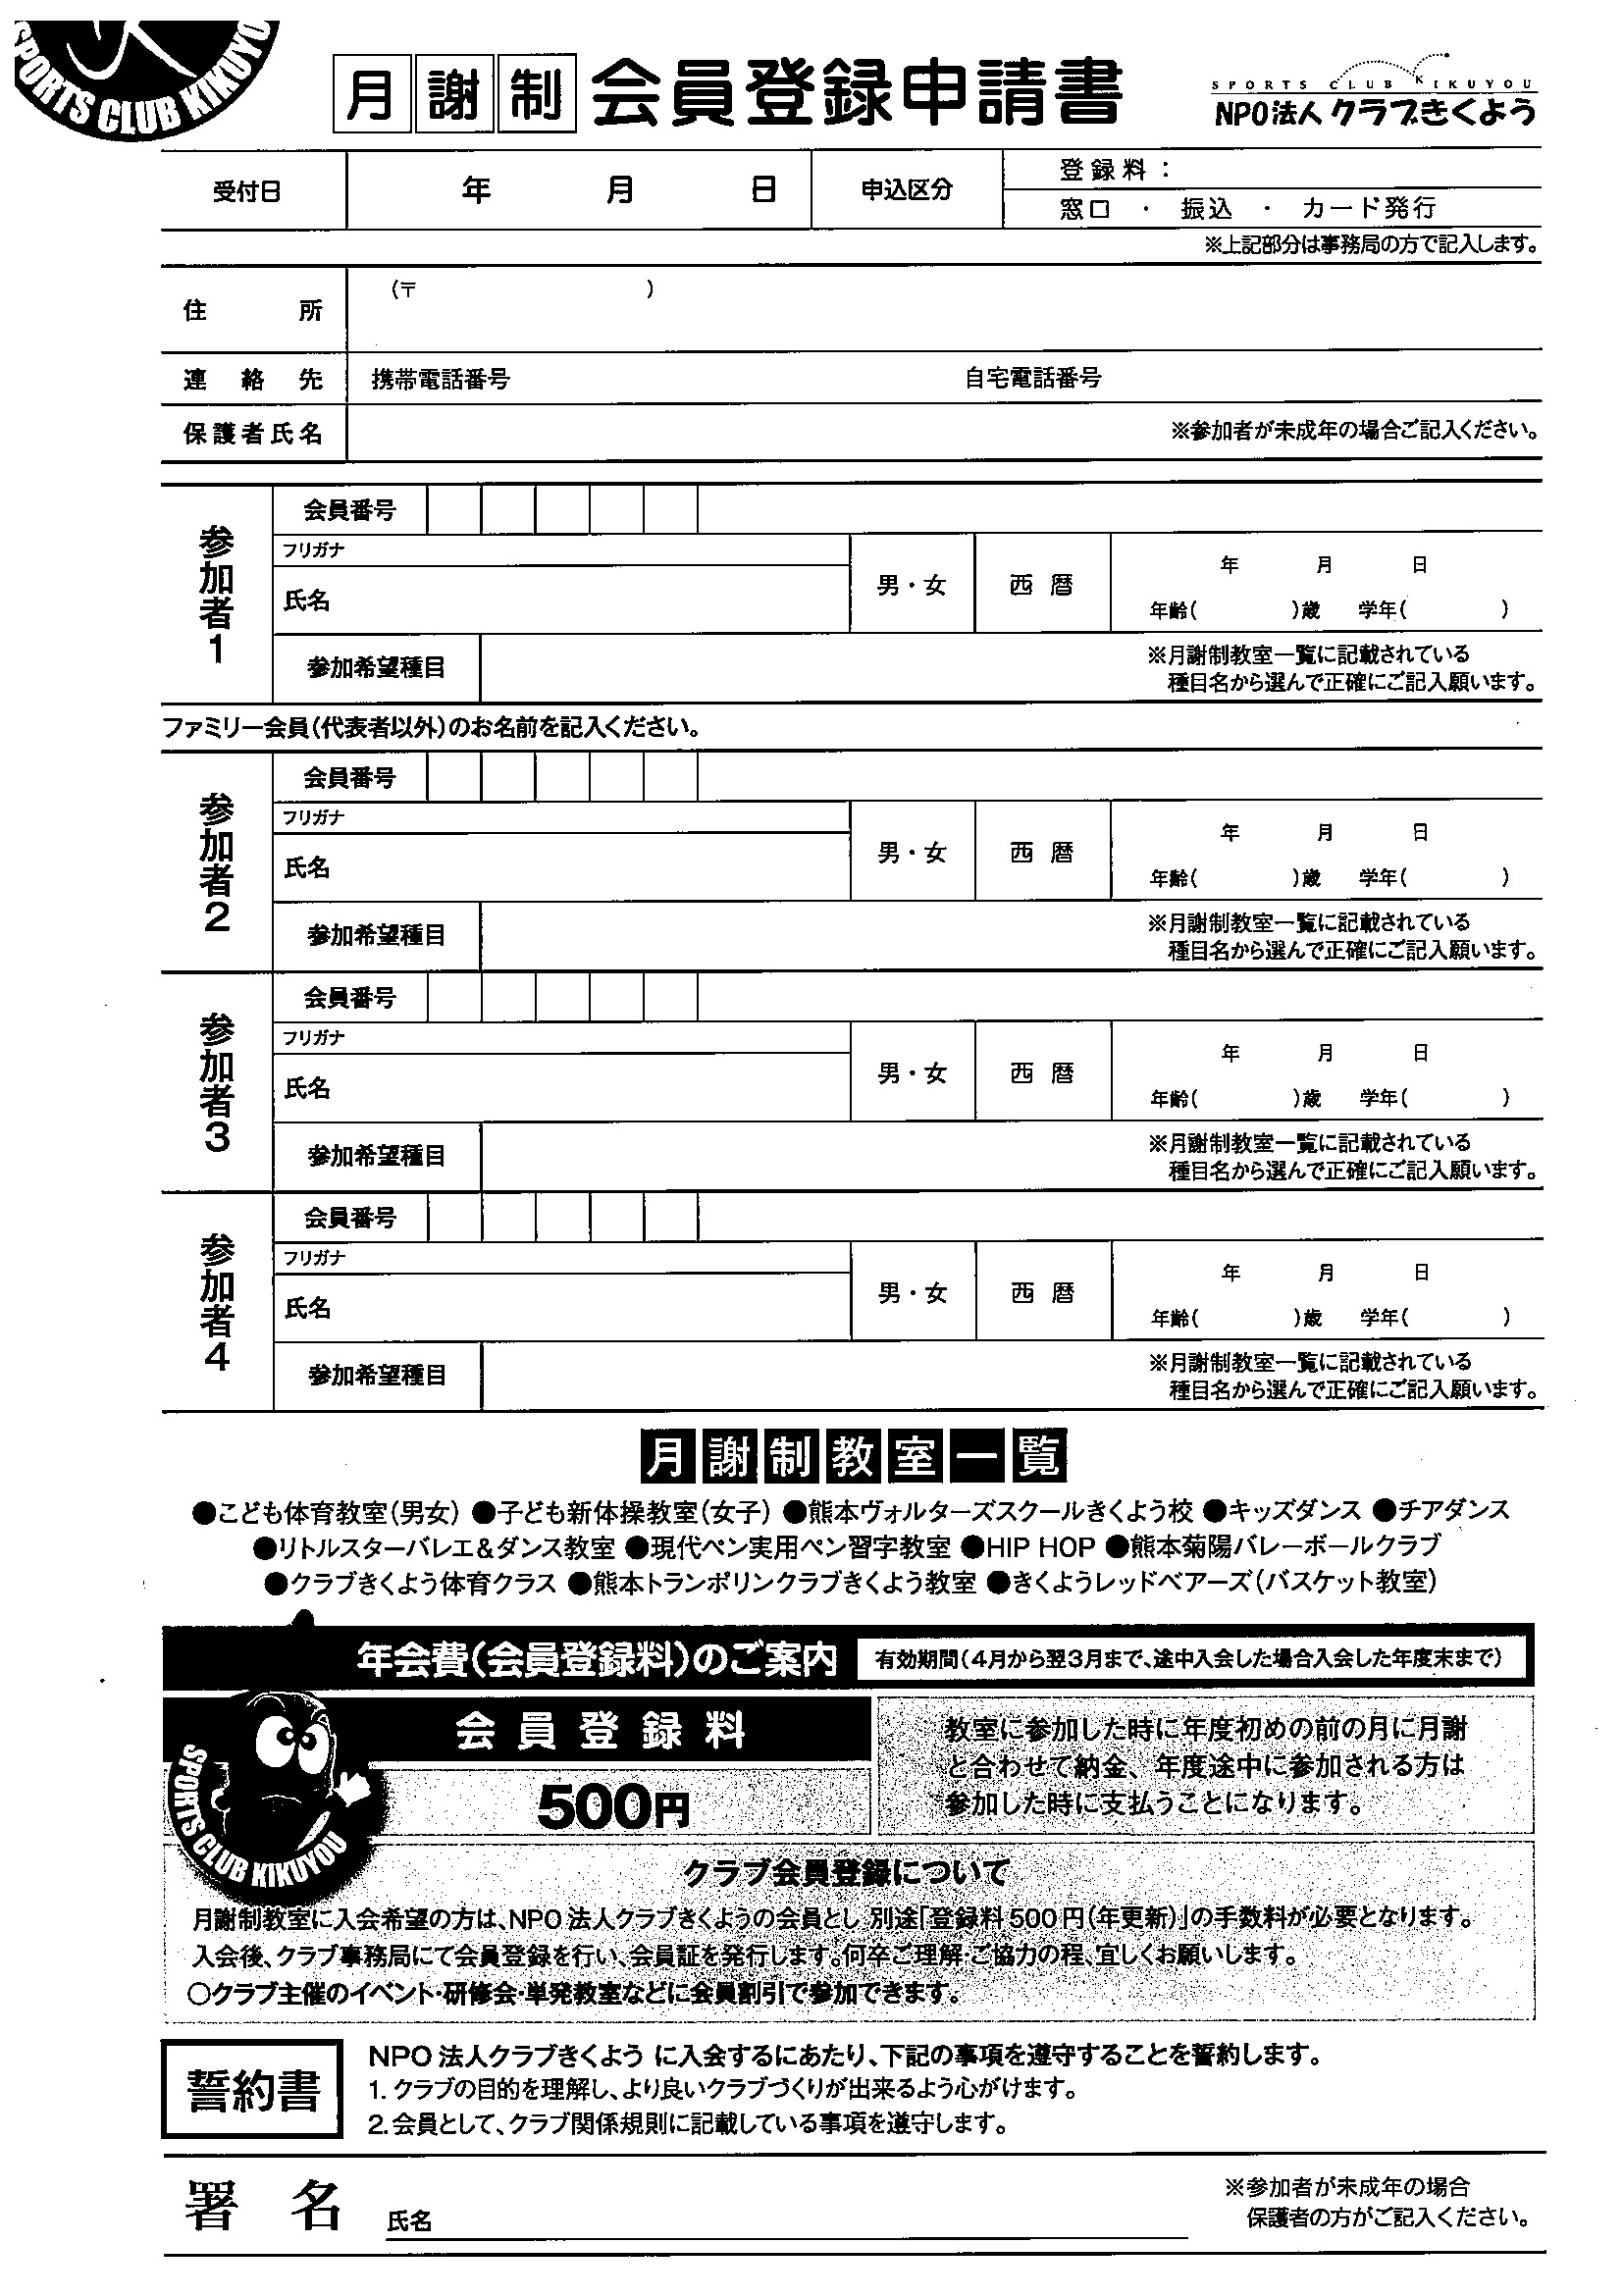 スポーツクラブ登録申請書(年会費制)